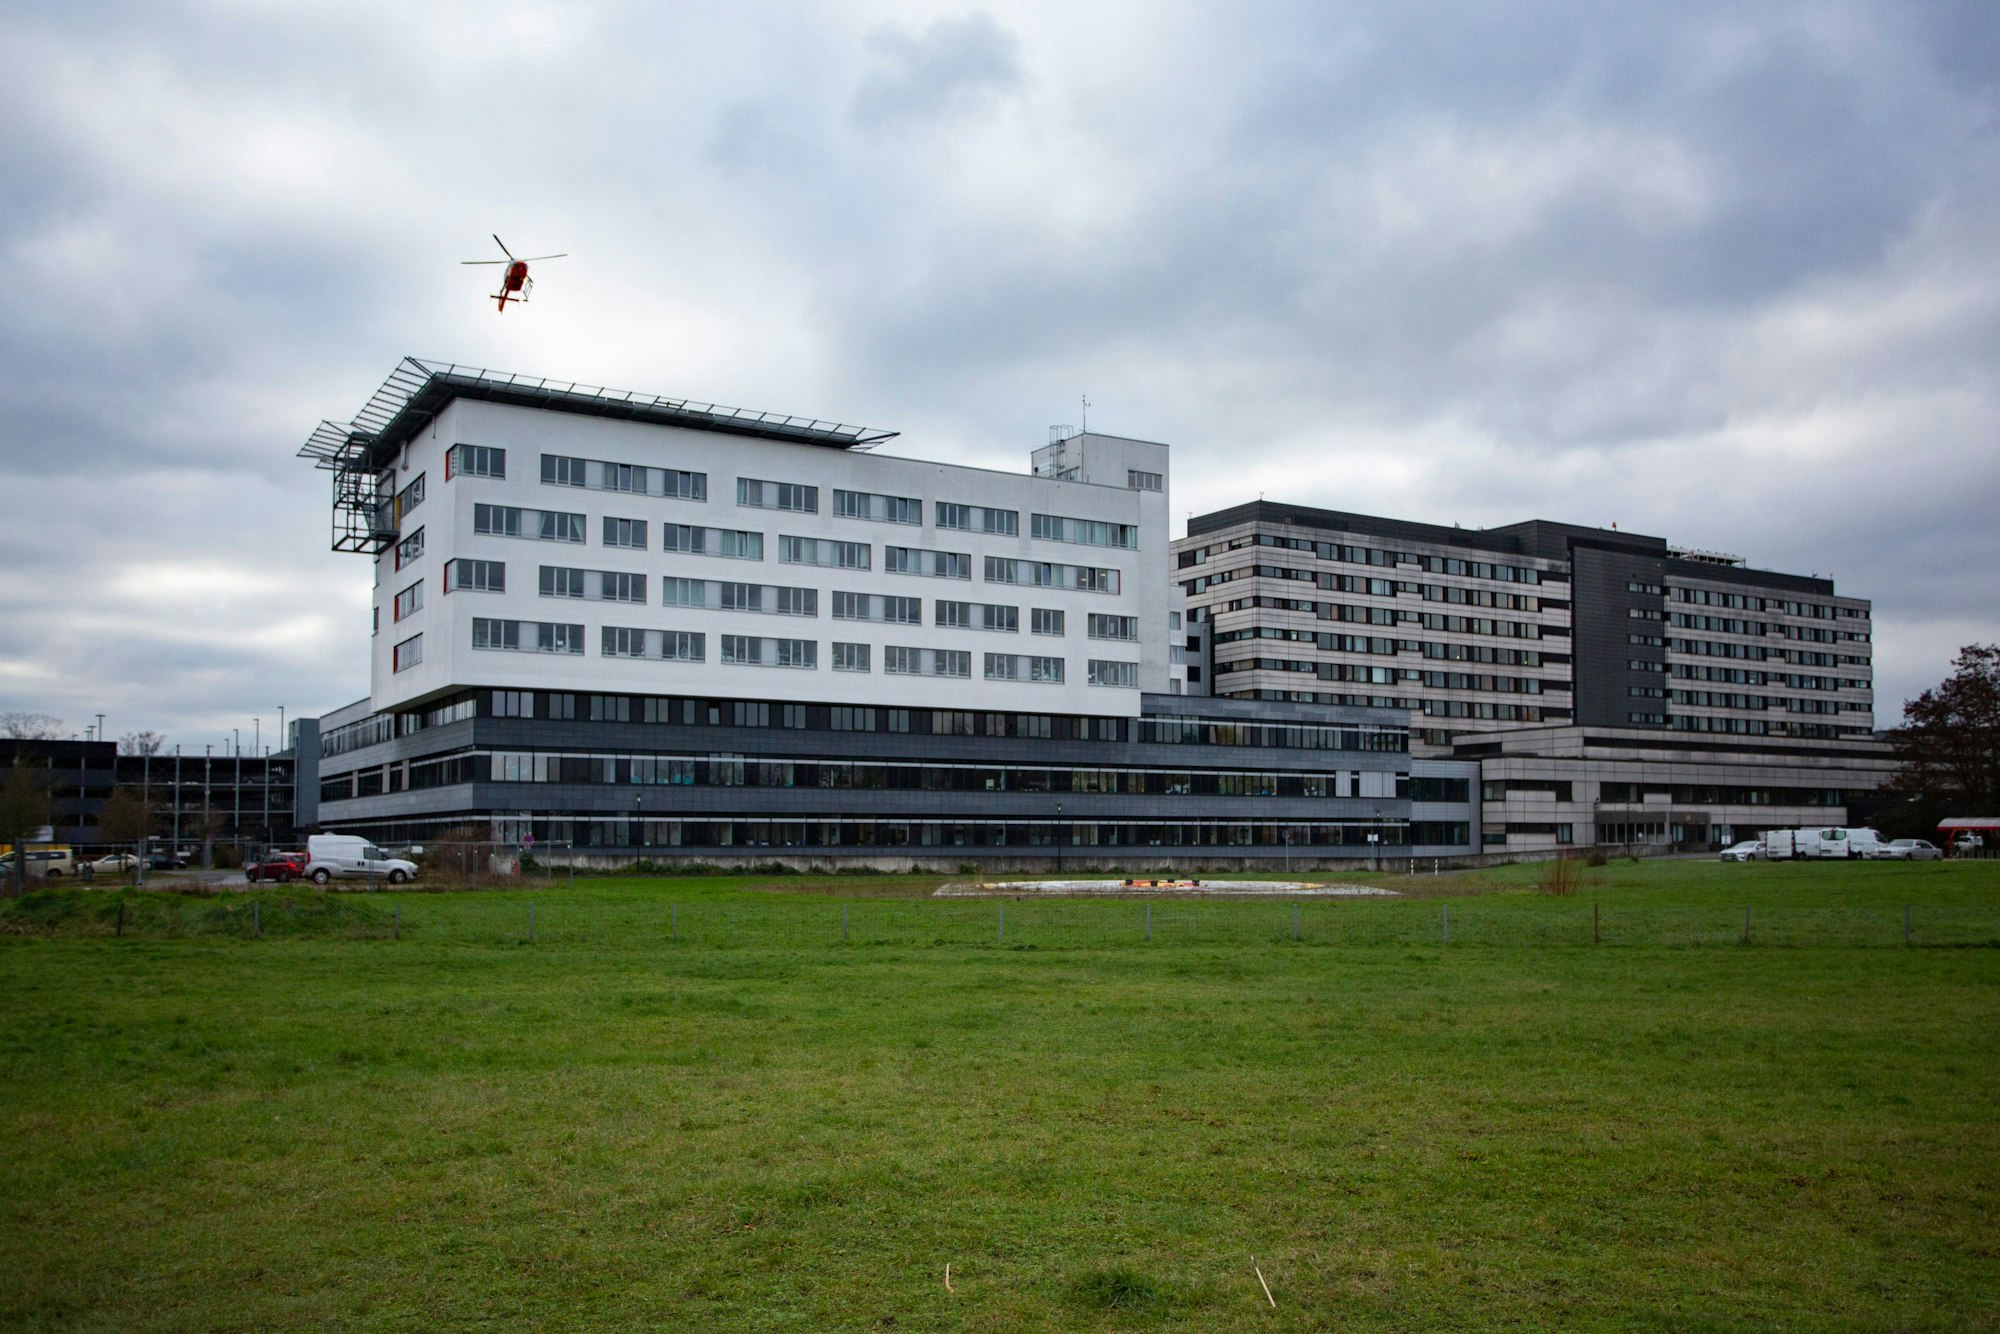 Die Klinik Merheim bietet Platz für Erweiterungen – die Kliniken Holweide und Riehl könnten hierher verlagert werden.